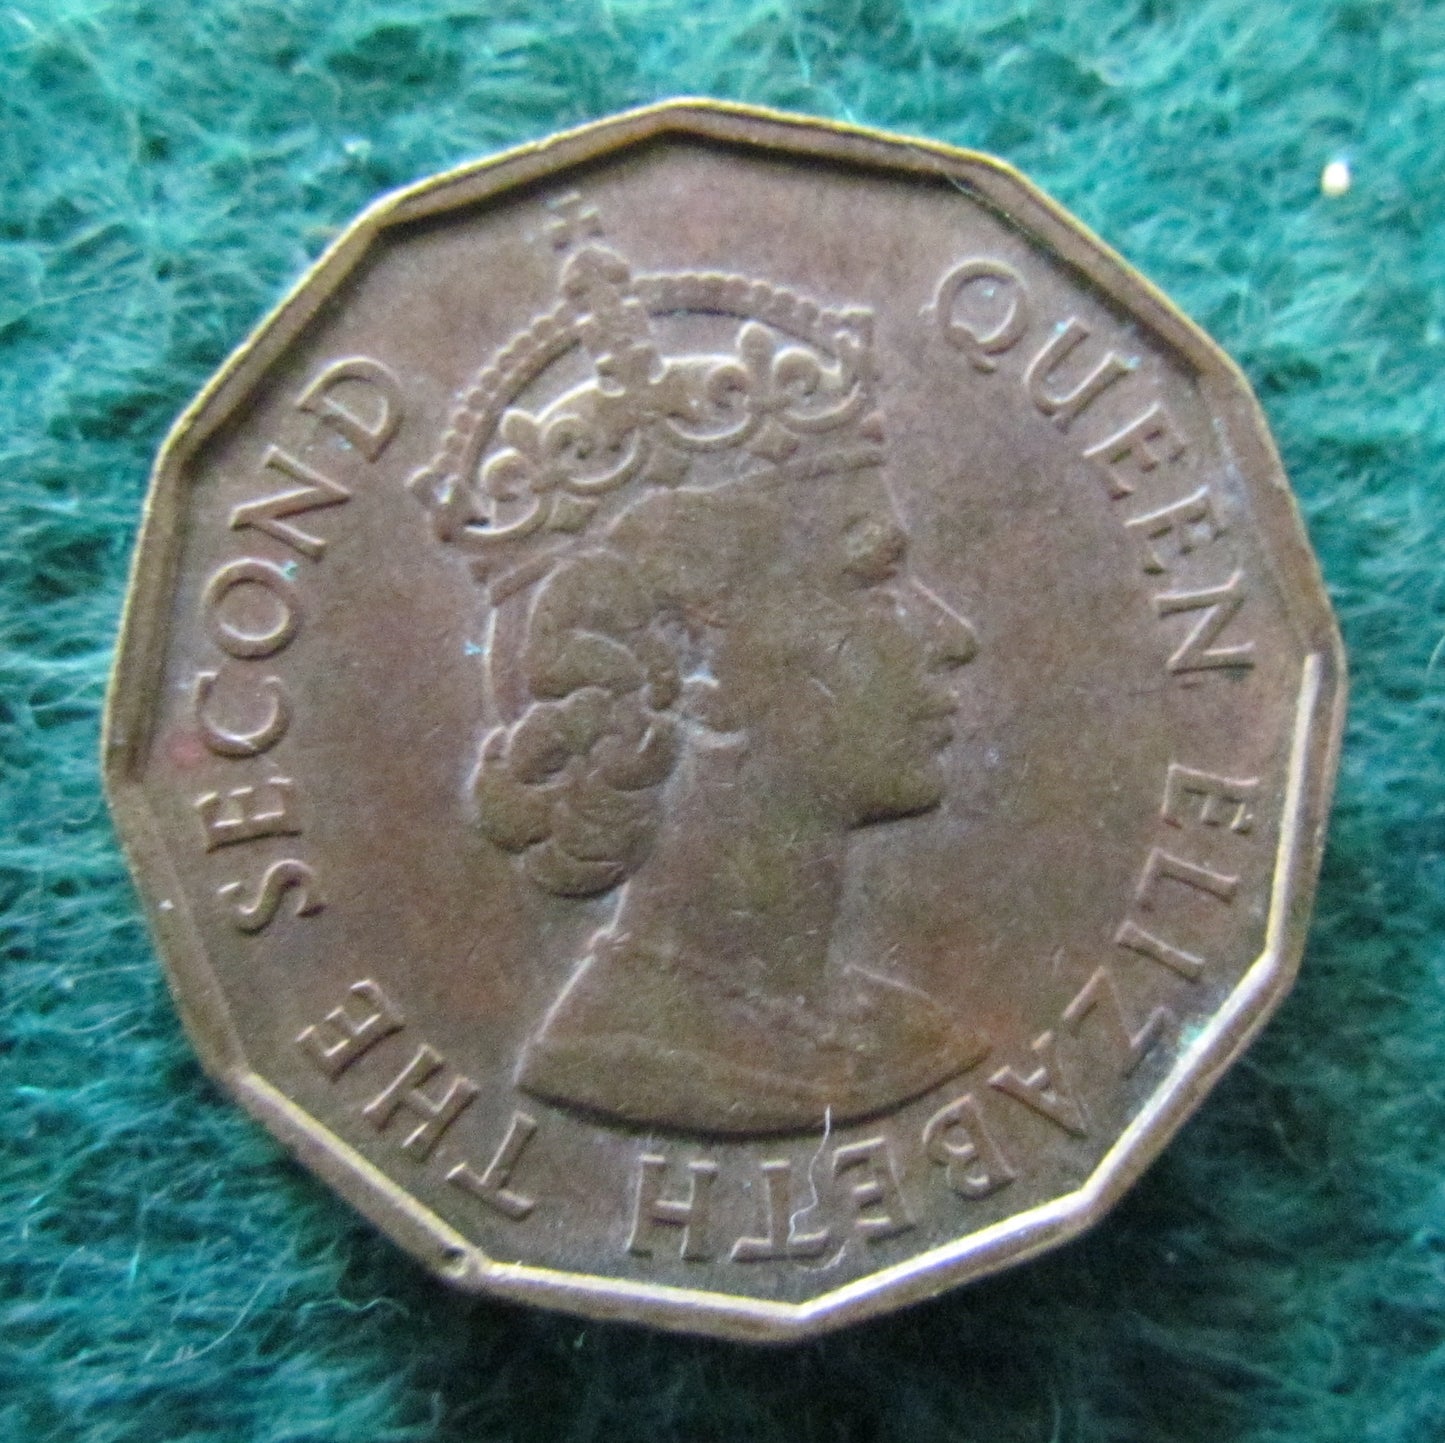 Fiji 1964 Three Pence Queen Elizabeth II Coin